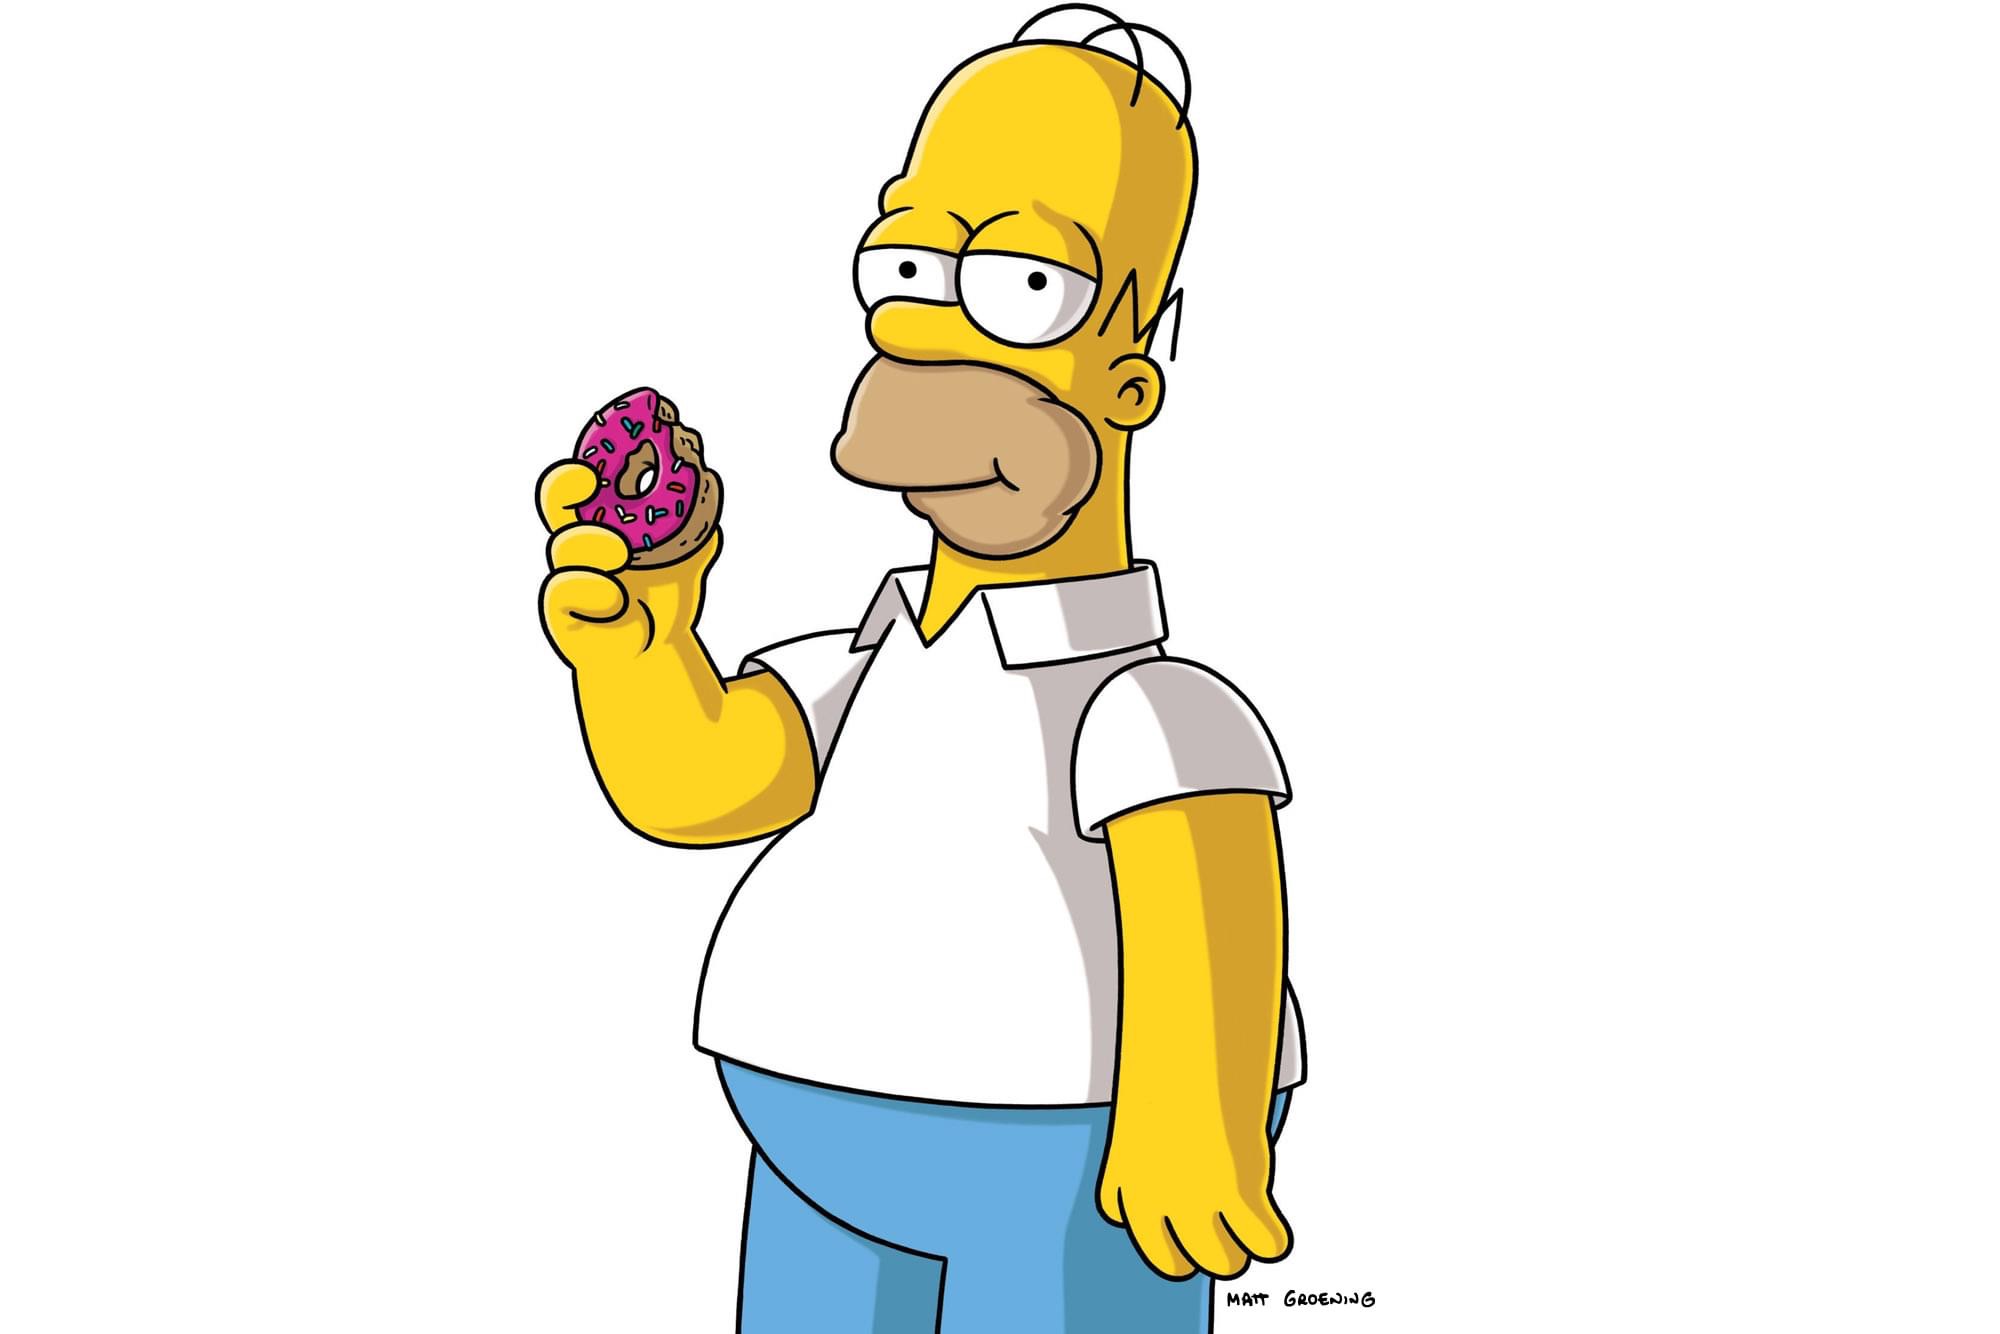 simpsons donut - Matt Groening